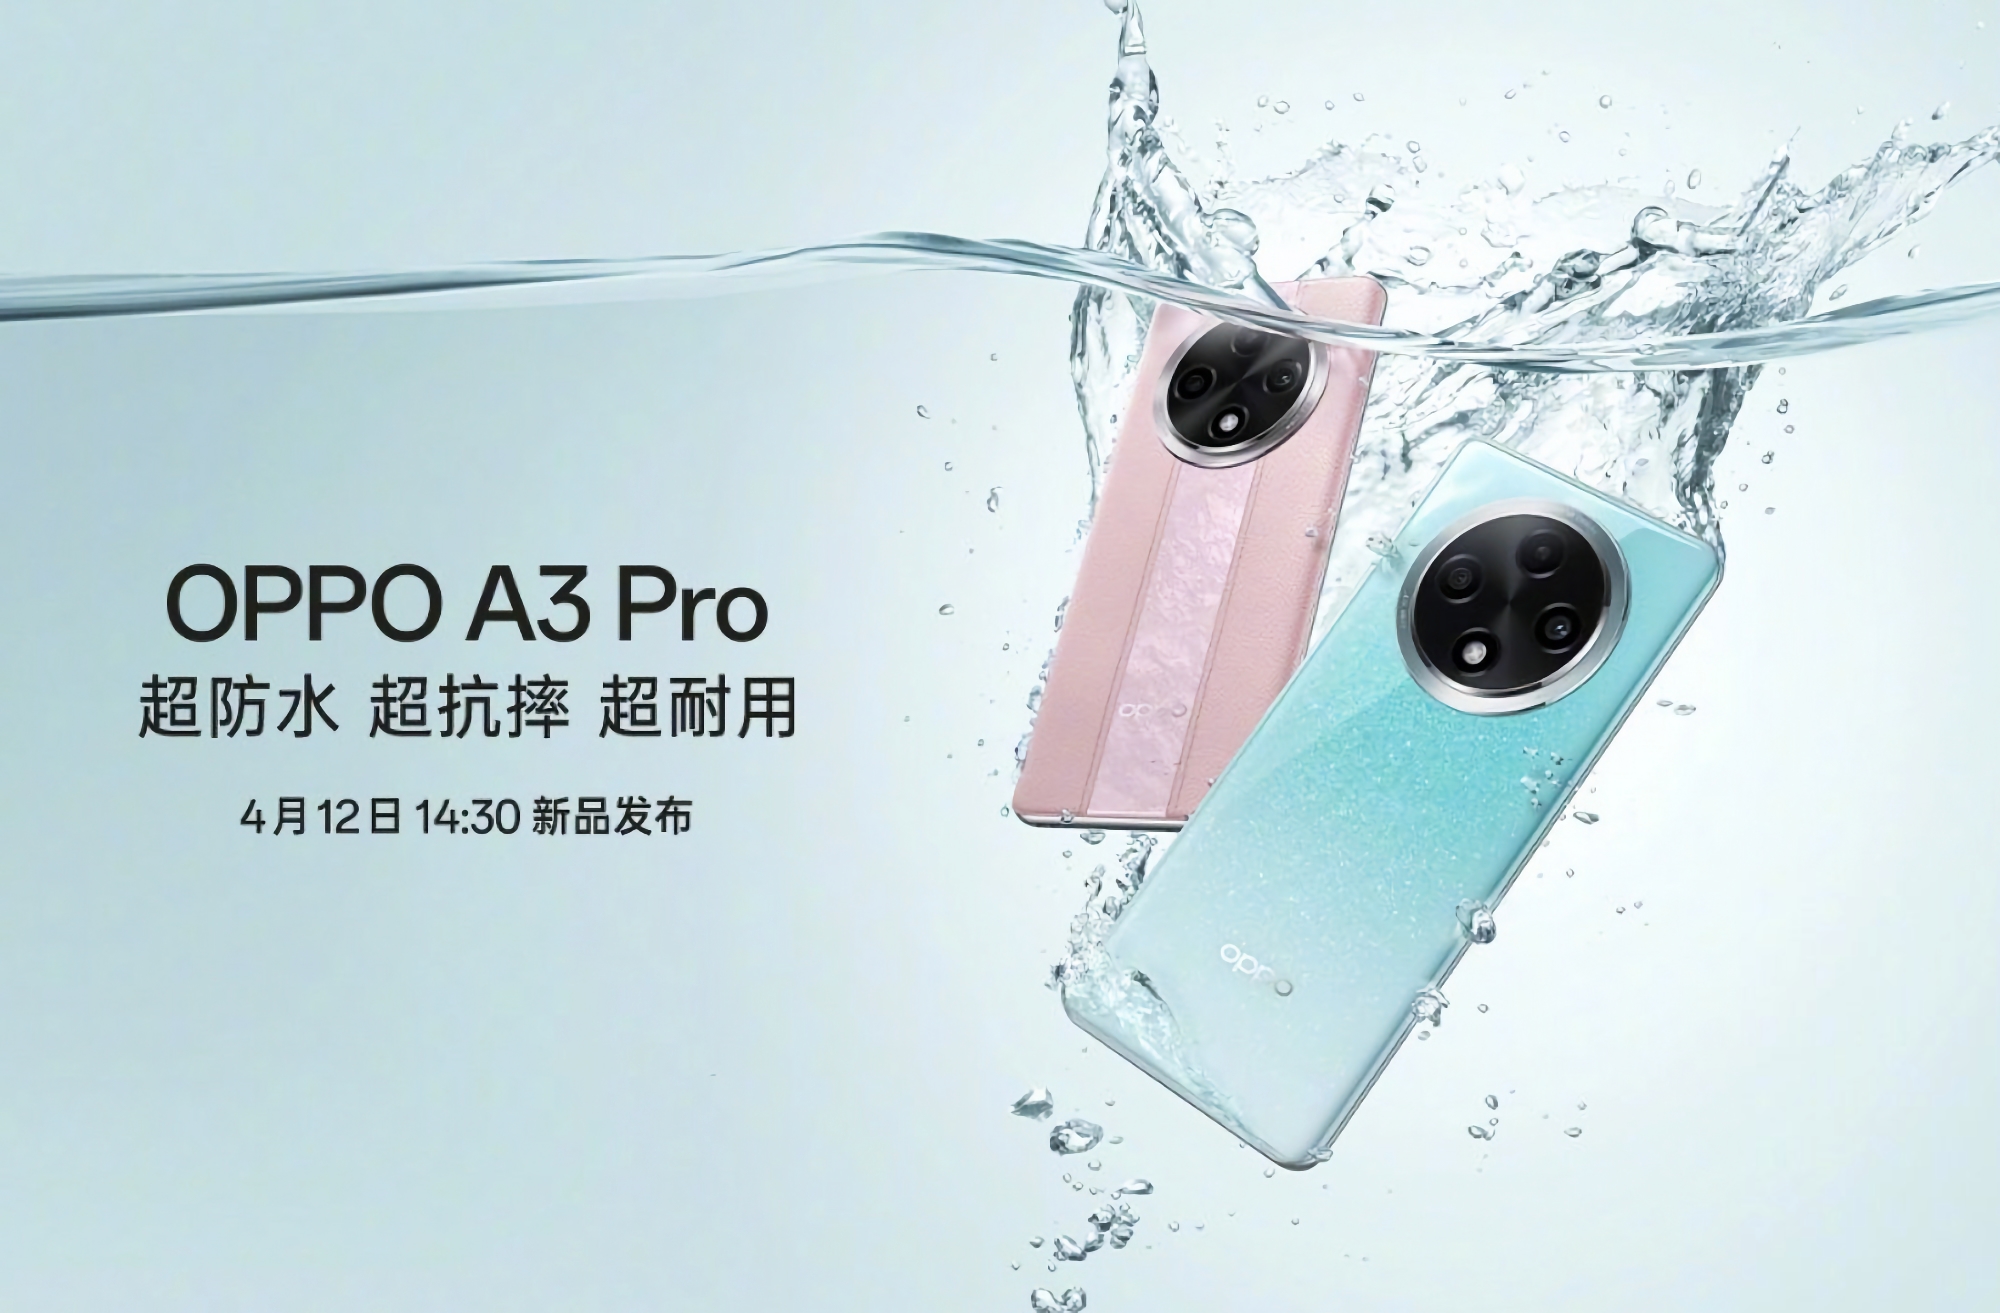 È ufficiale: OPPO A3 Pro farà il suo debutto il 12 aprile